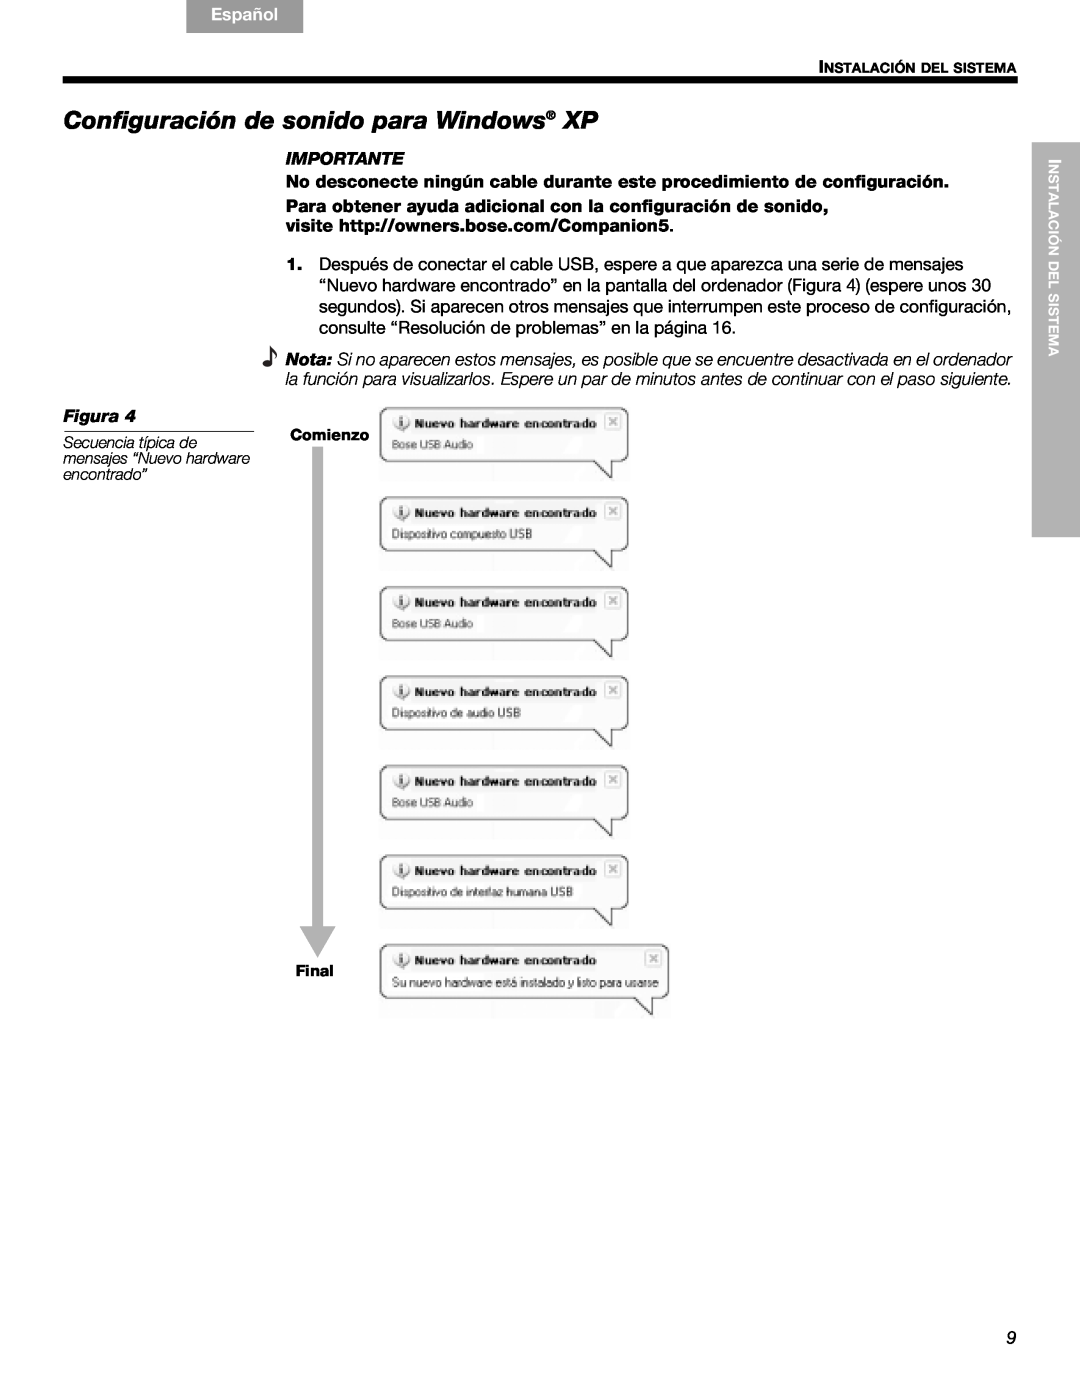 Bose Companion (R) 5, 40326 manual Configuración de sonido para Windows XP, English, Español, Français, Importante, Figura 